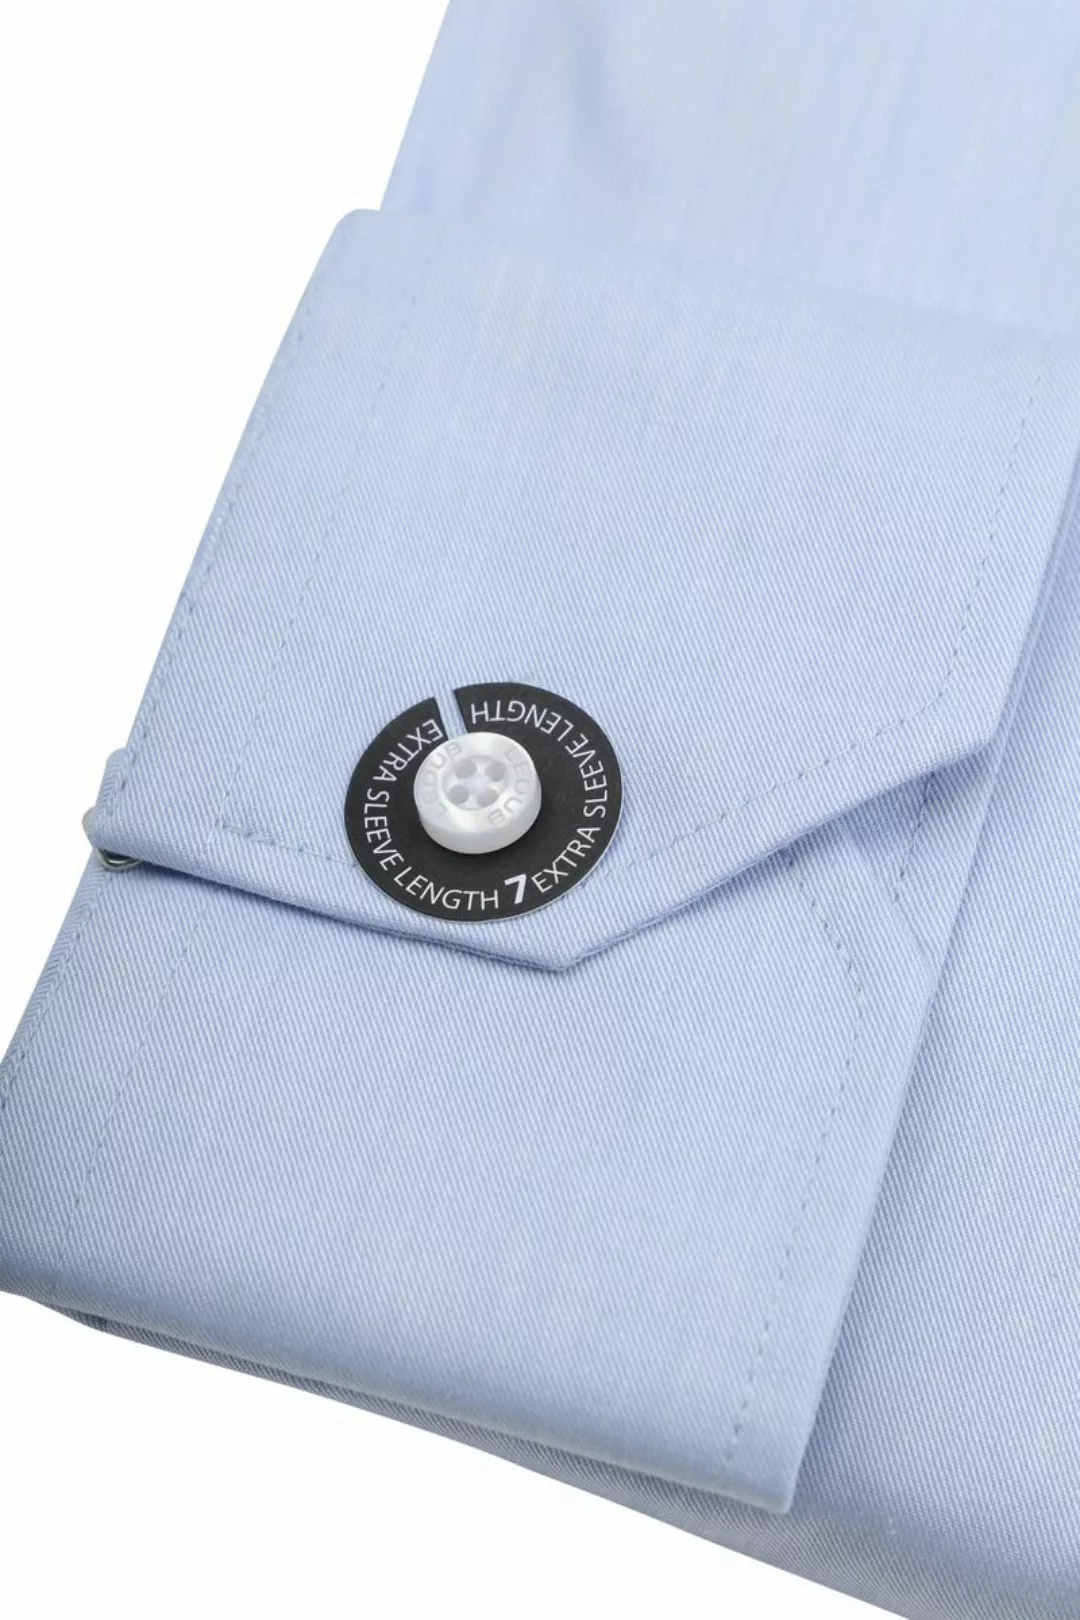 Ledub Hemd Hellblau Brusttassche Extra Long Sleeves - Größe 41 günstig online kaufen